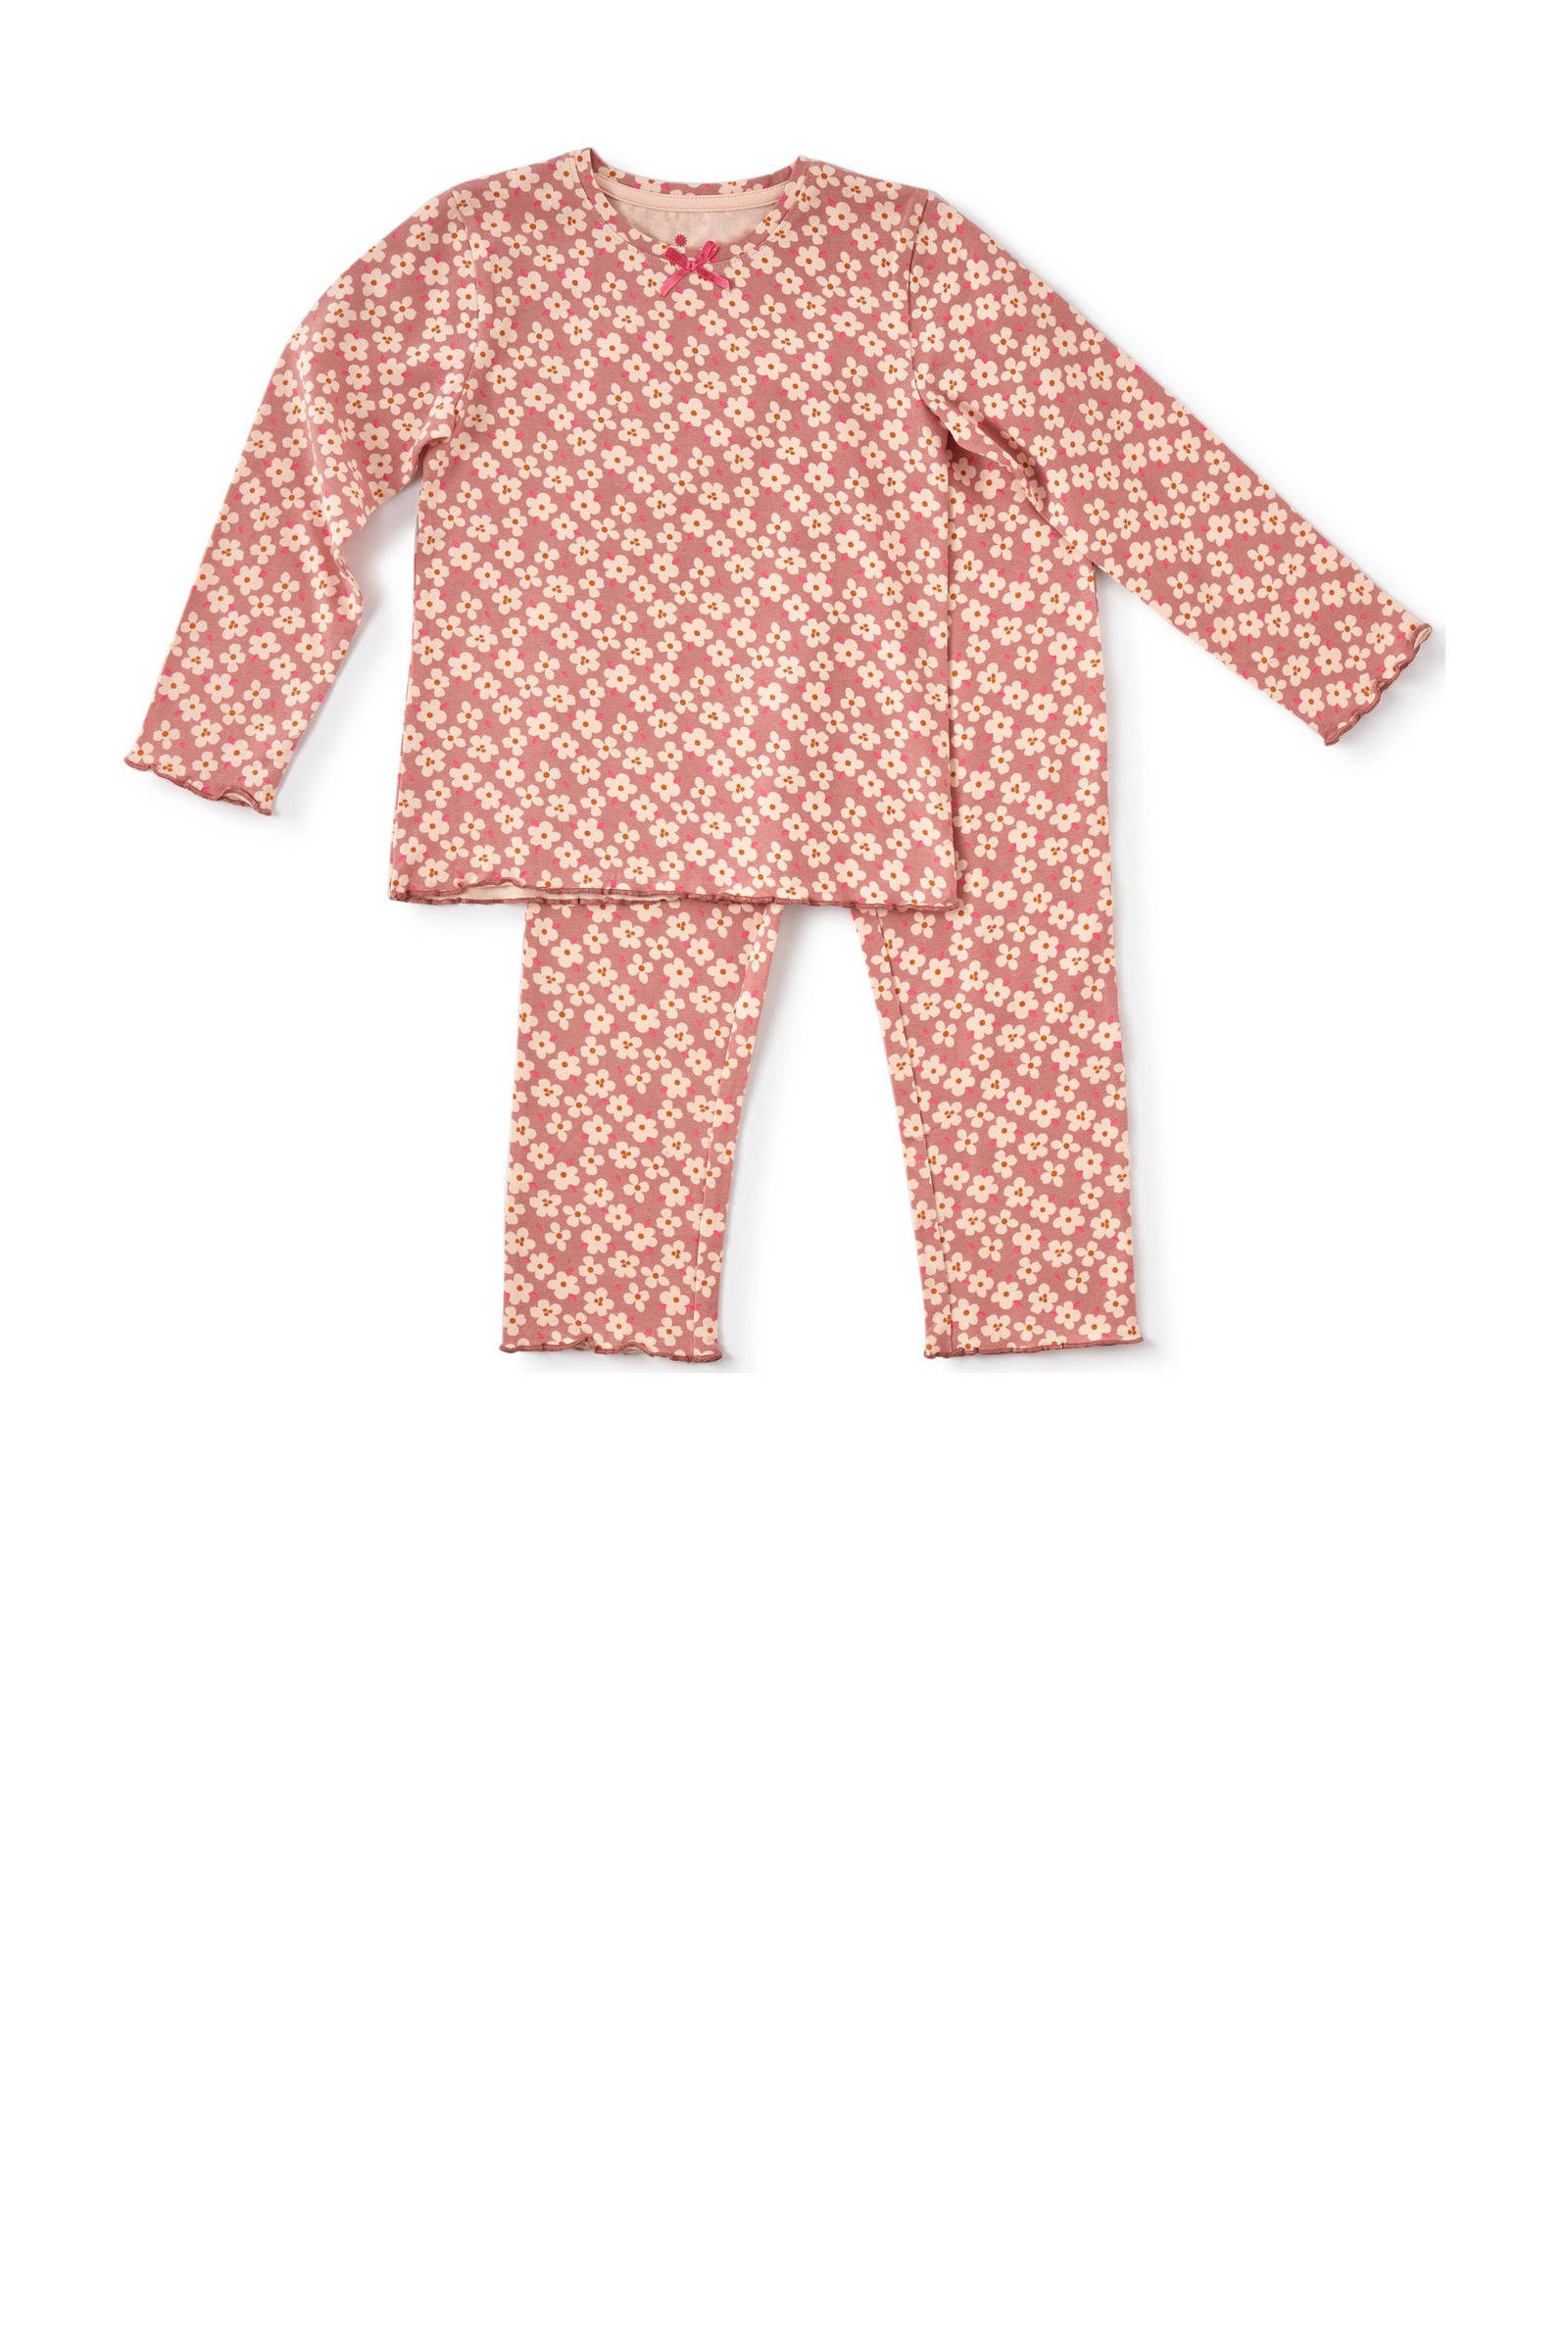 Gebloemde pyjama roze wehkamp Meisjes Kleding Nachtmode Pyjamas 